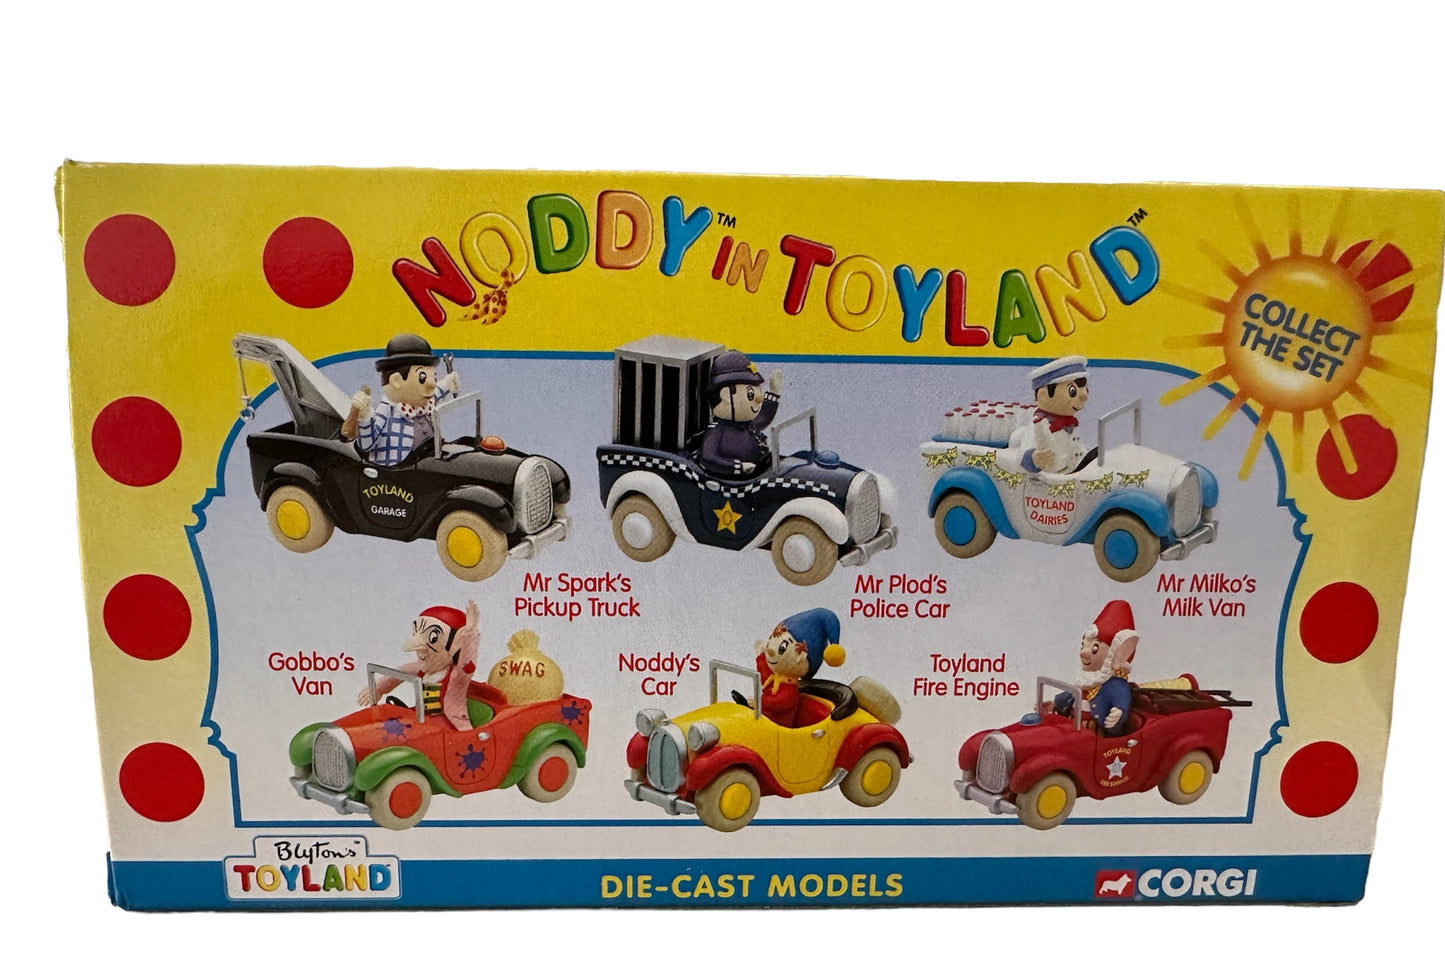 Vintage 2001 Corgi Noddy In Toyland - Mr Sparks Pickup Truck Die-Cast Model With Mr Sparks Figure - Brand New Shop Stock Room Find